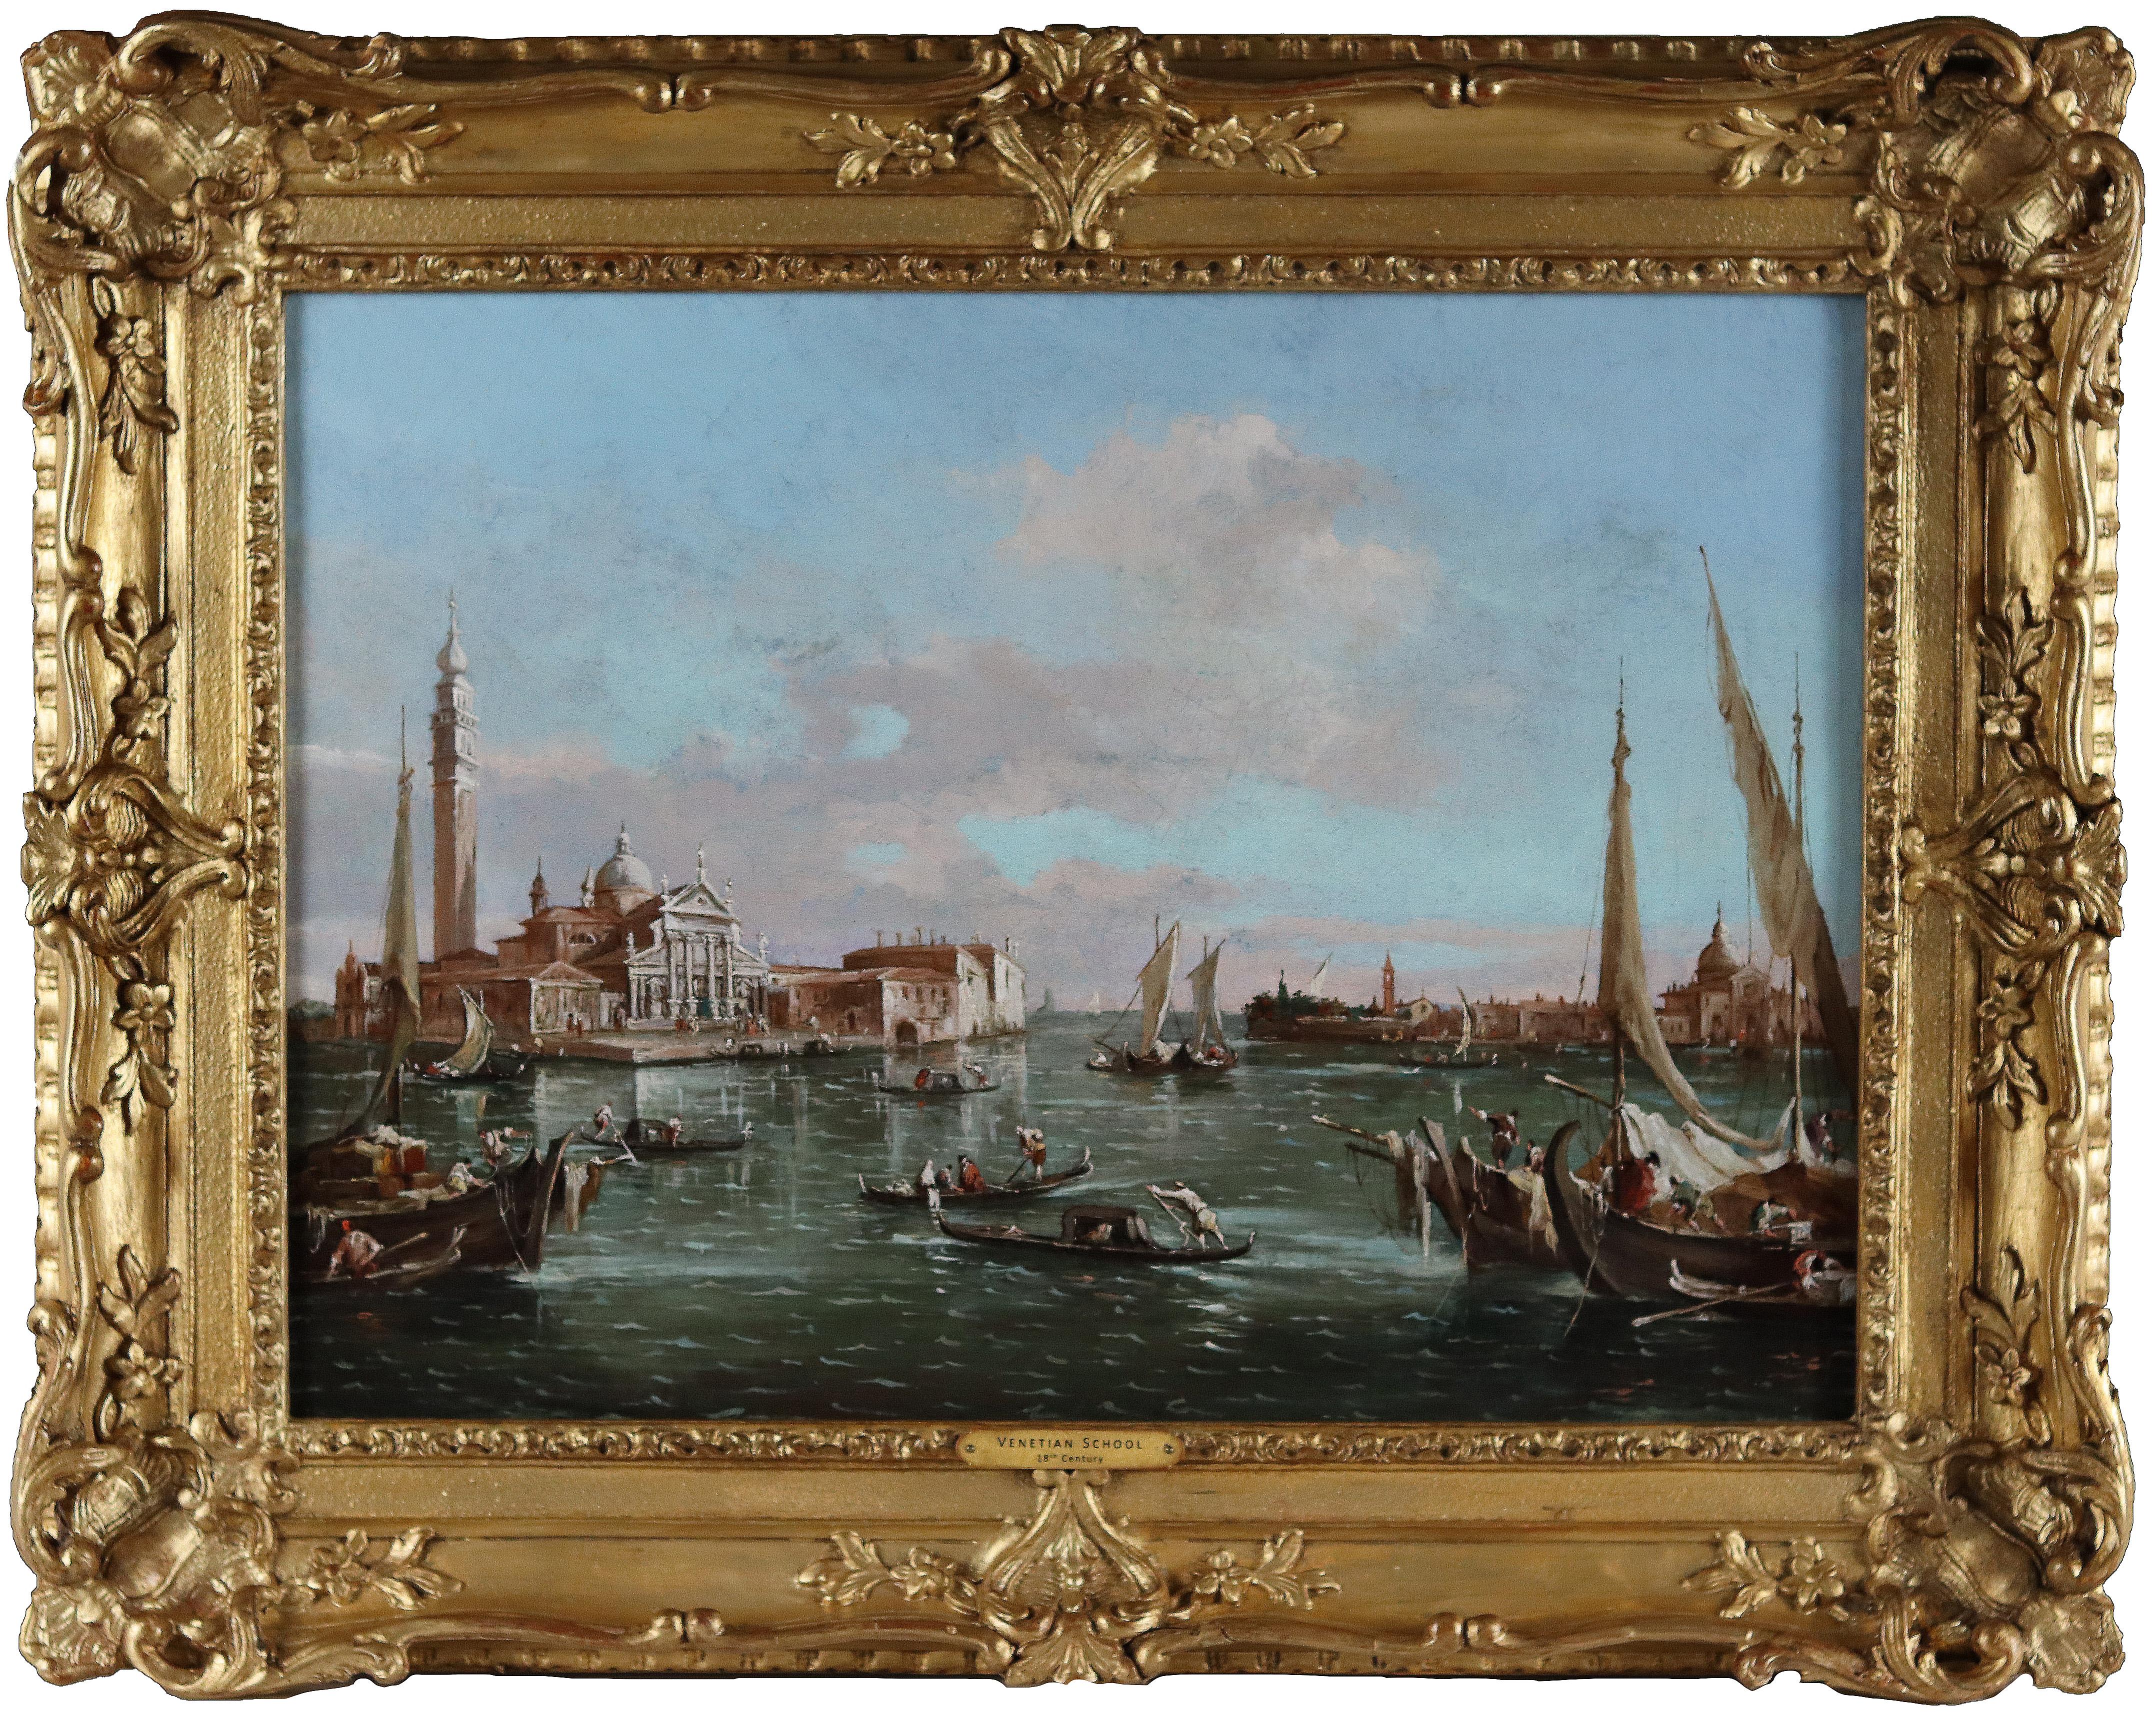 Ein Paar venezianische Canal-Szenen aus dem 18. Jahrhundert im Stil von Francesco Guardi   – Painting von 18th Century Italian School